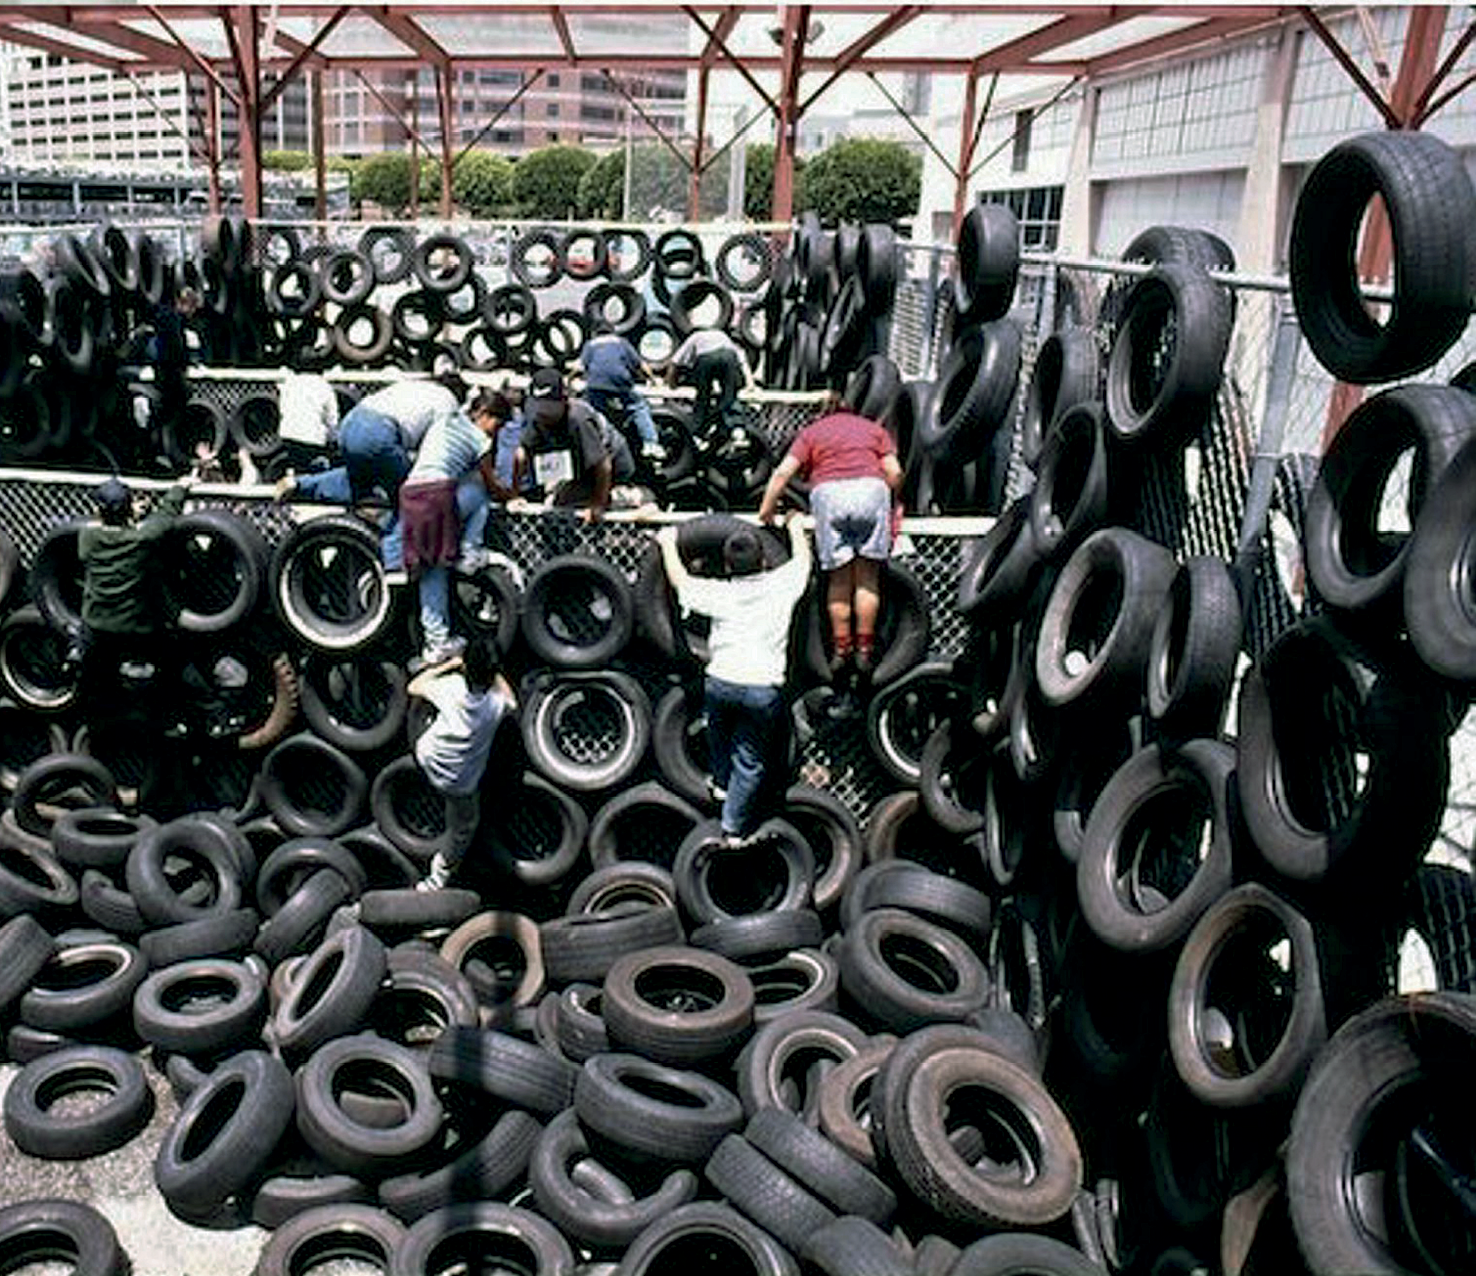 Fotografia. Espaço delimitado por alambrados de metal, com vários pneus pendurados e empilhados no chão. Diversas pessoas estão escalando os pneus e saltando os alambrados.